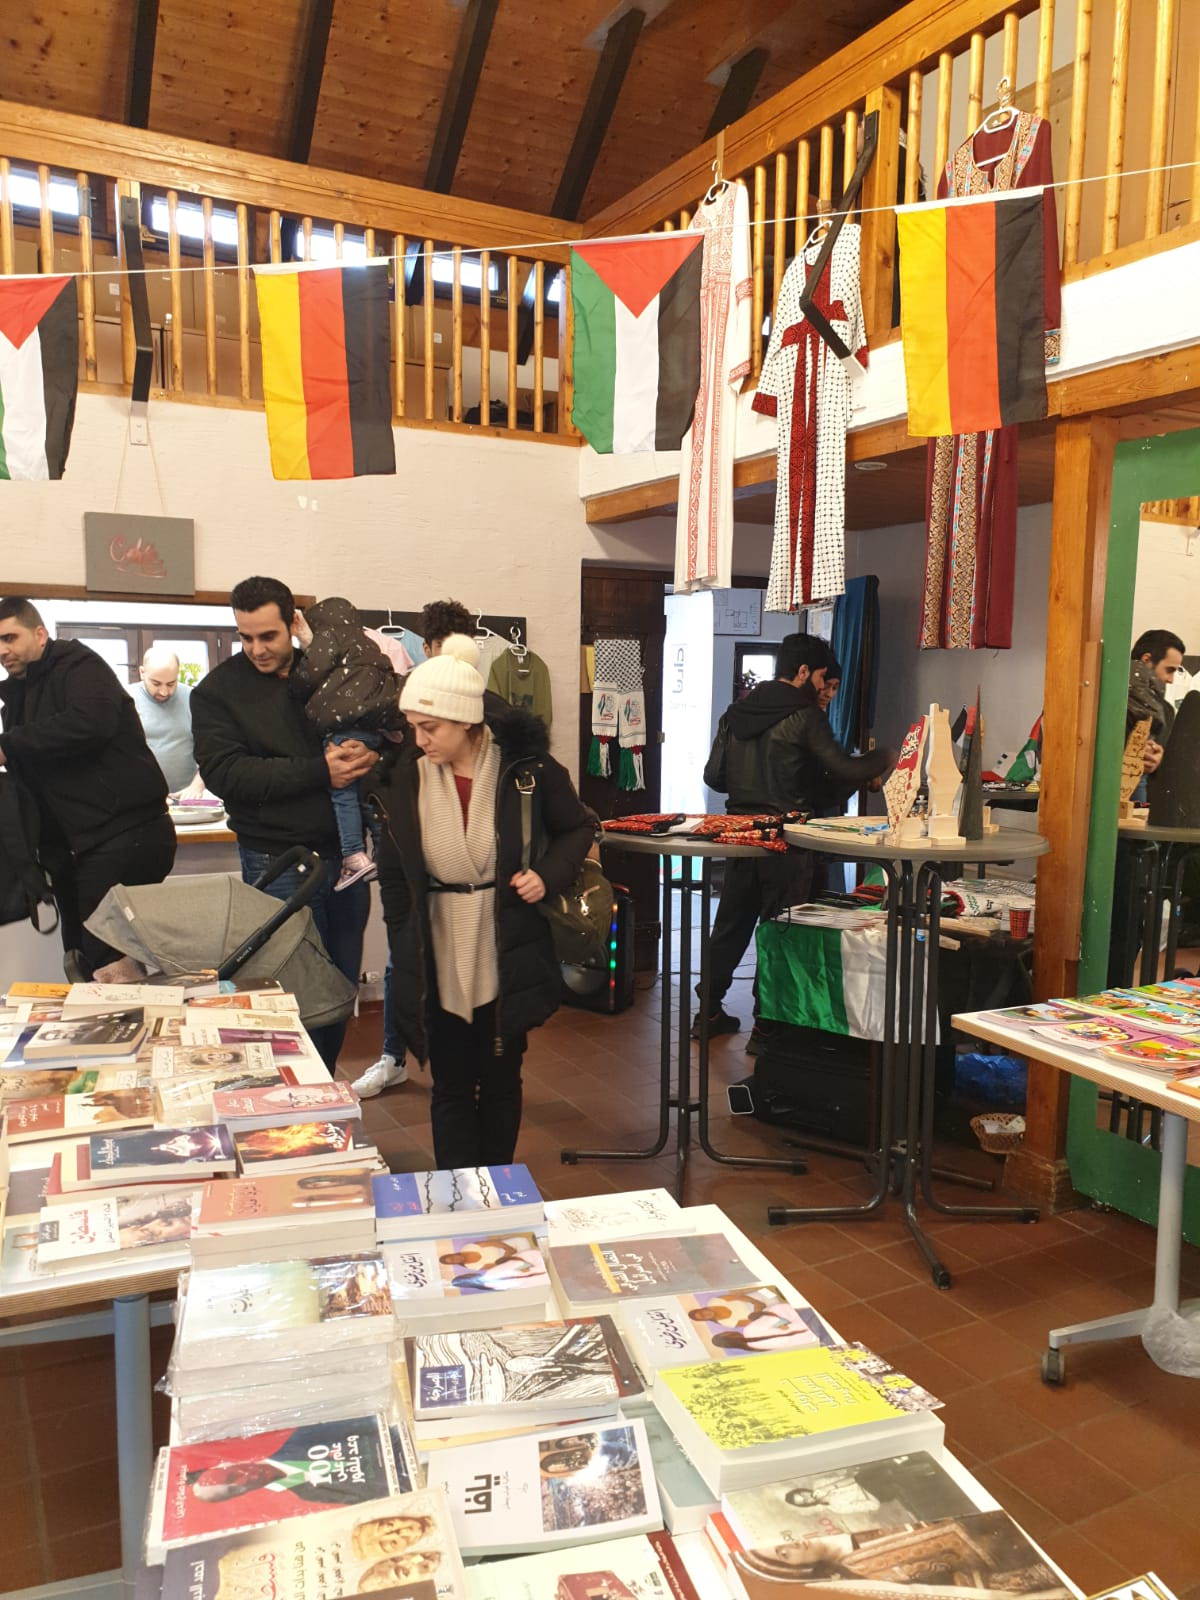 مركز دارنا للتراث الفلسطيني يشارك في المعرض الكتاب العربي وبالتعاون مع منتدى القدس الثقافي في مدينة ايرلانغن / المانيا